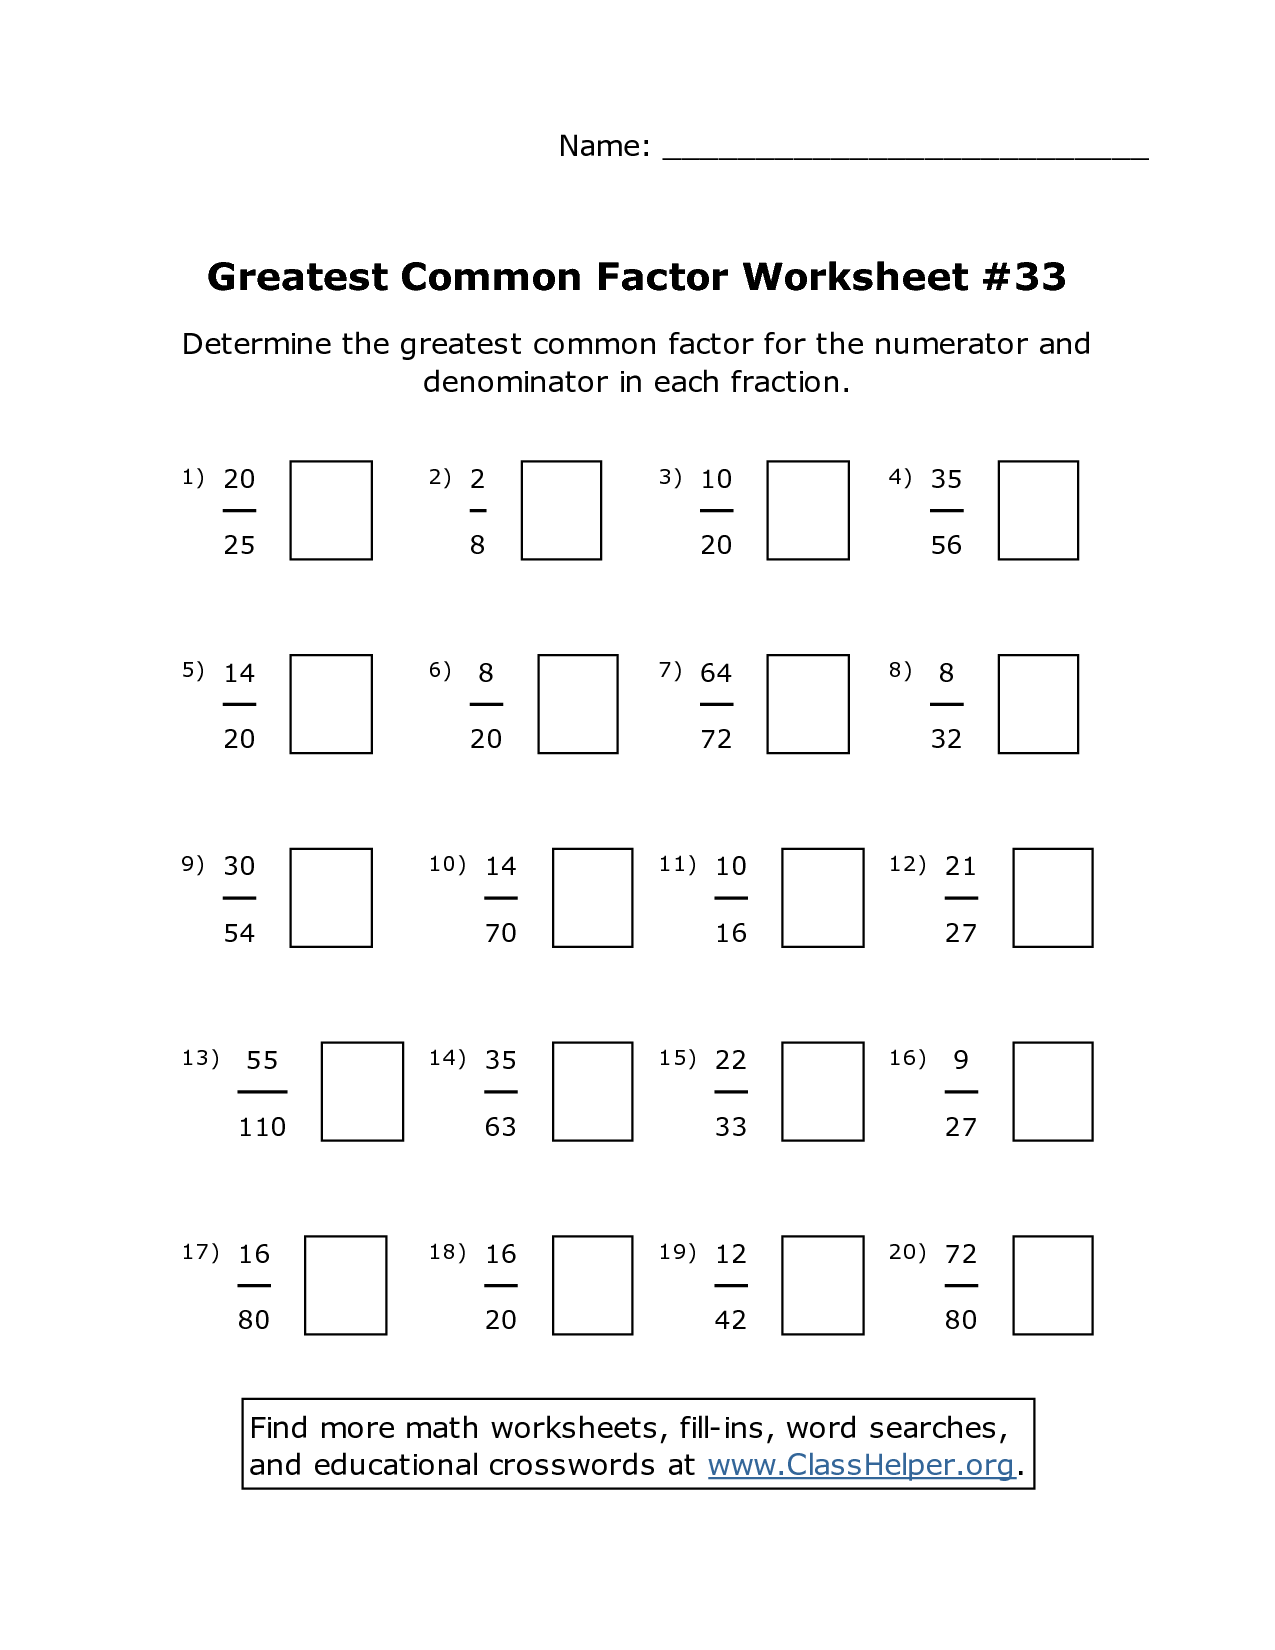 greatest-common-factor-grade-6